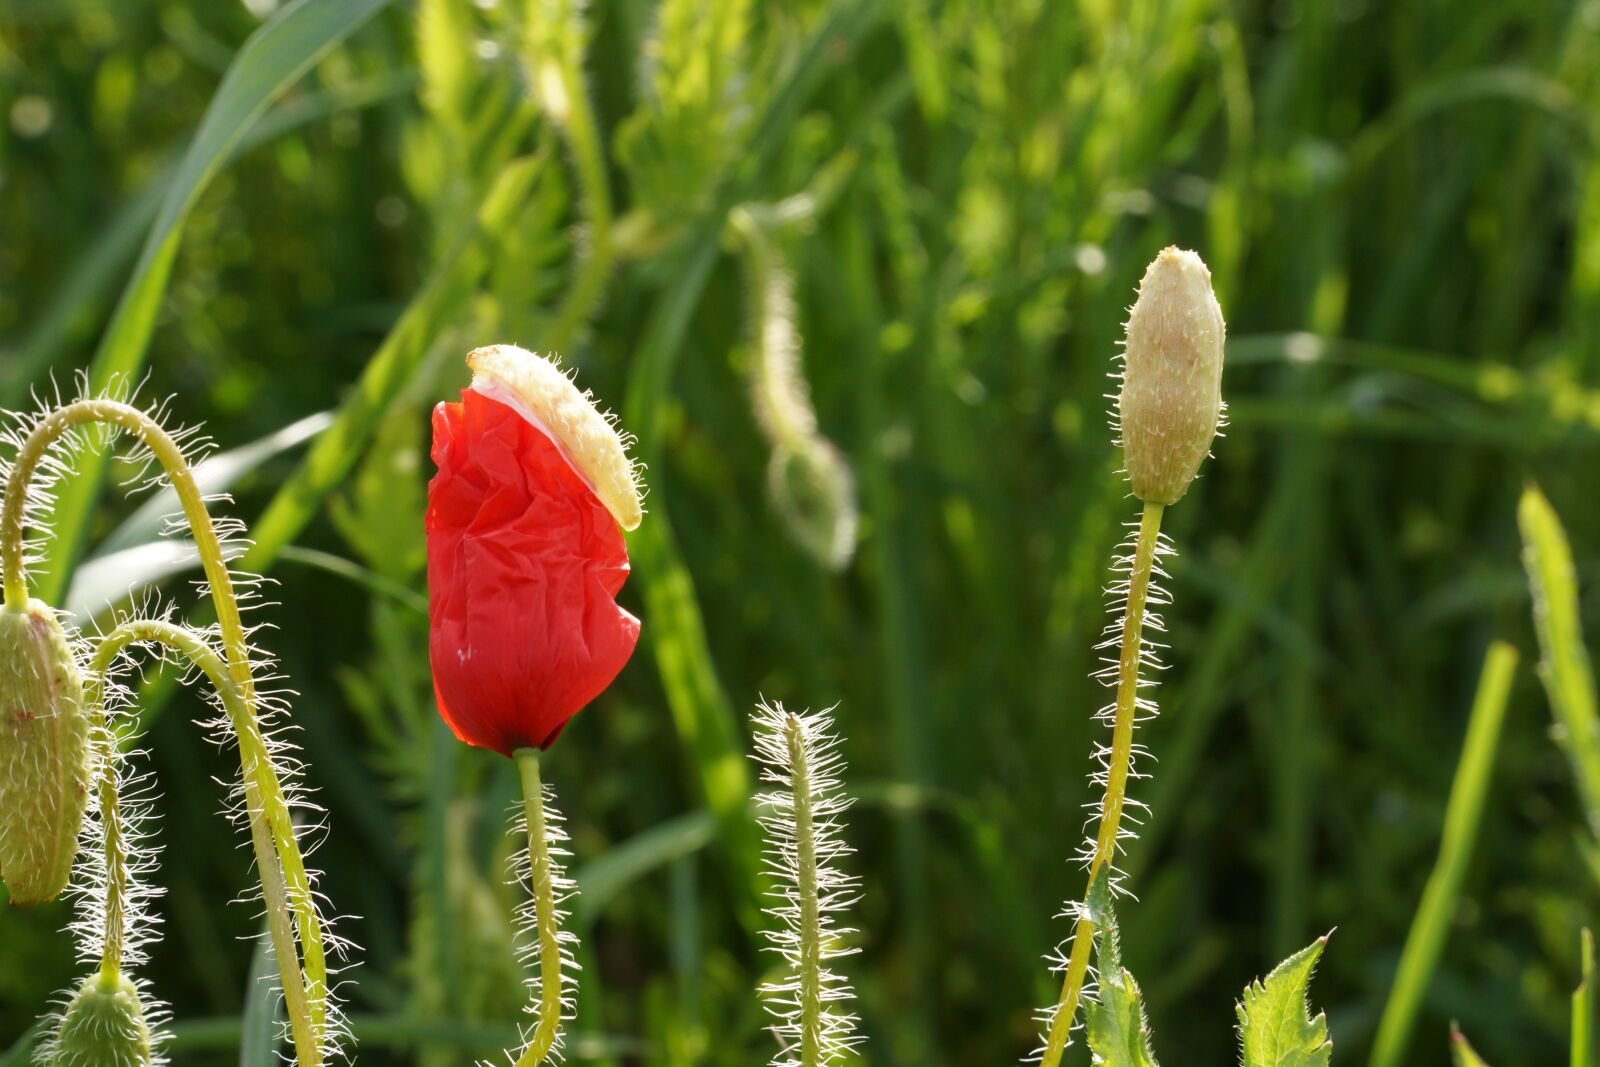 Sony Alpha NEX-7 sample photo. Poppy, flower, red photography